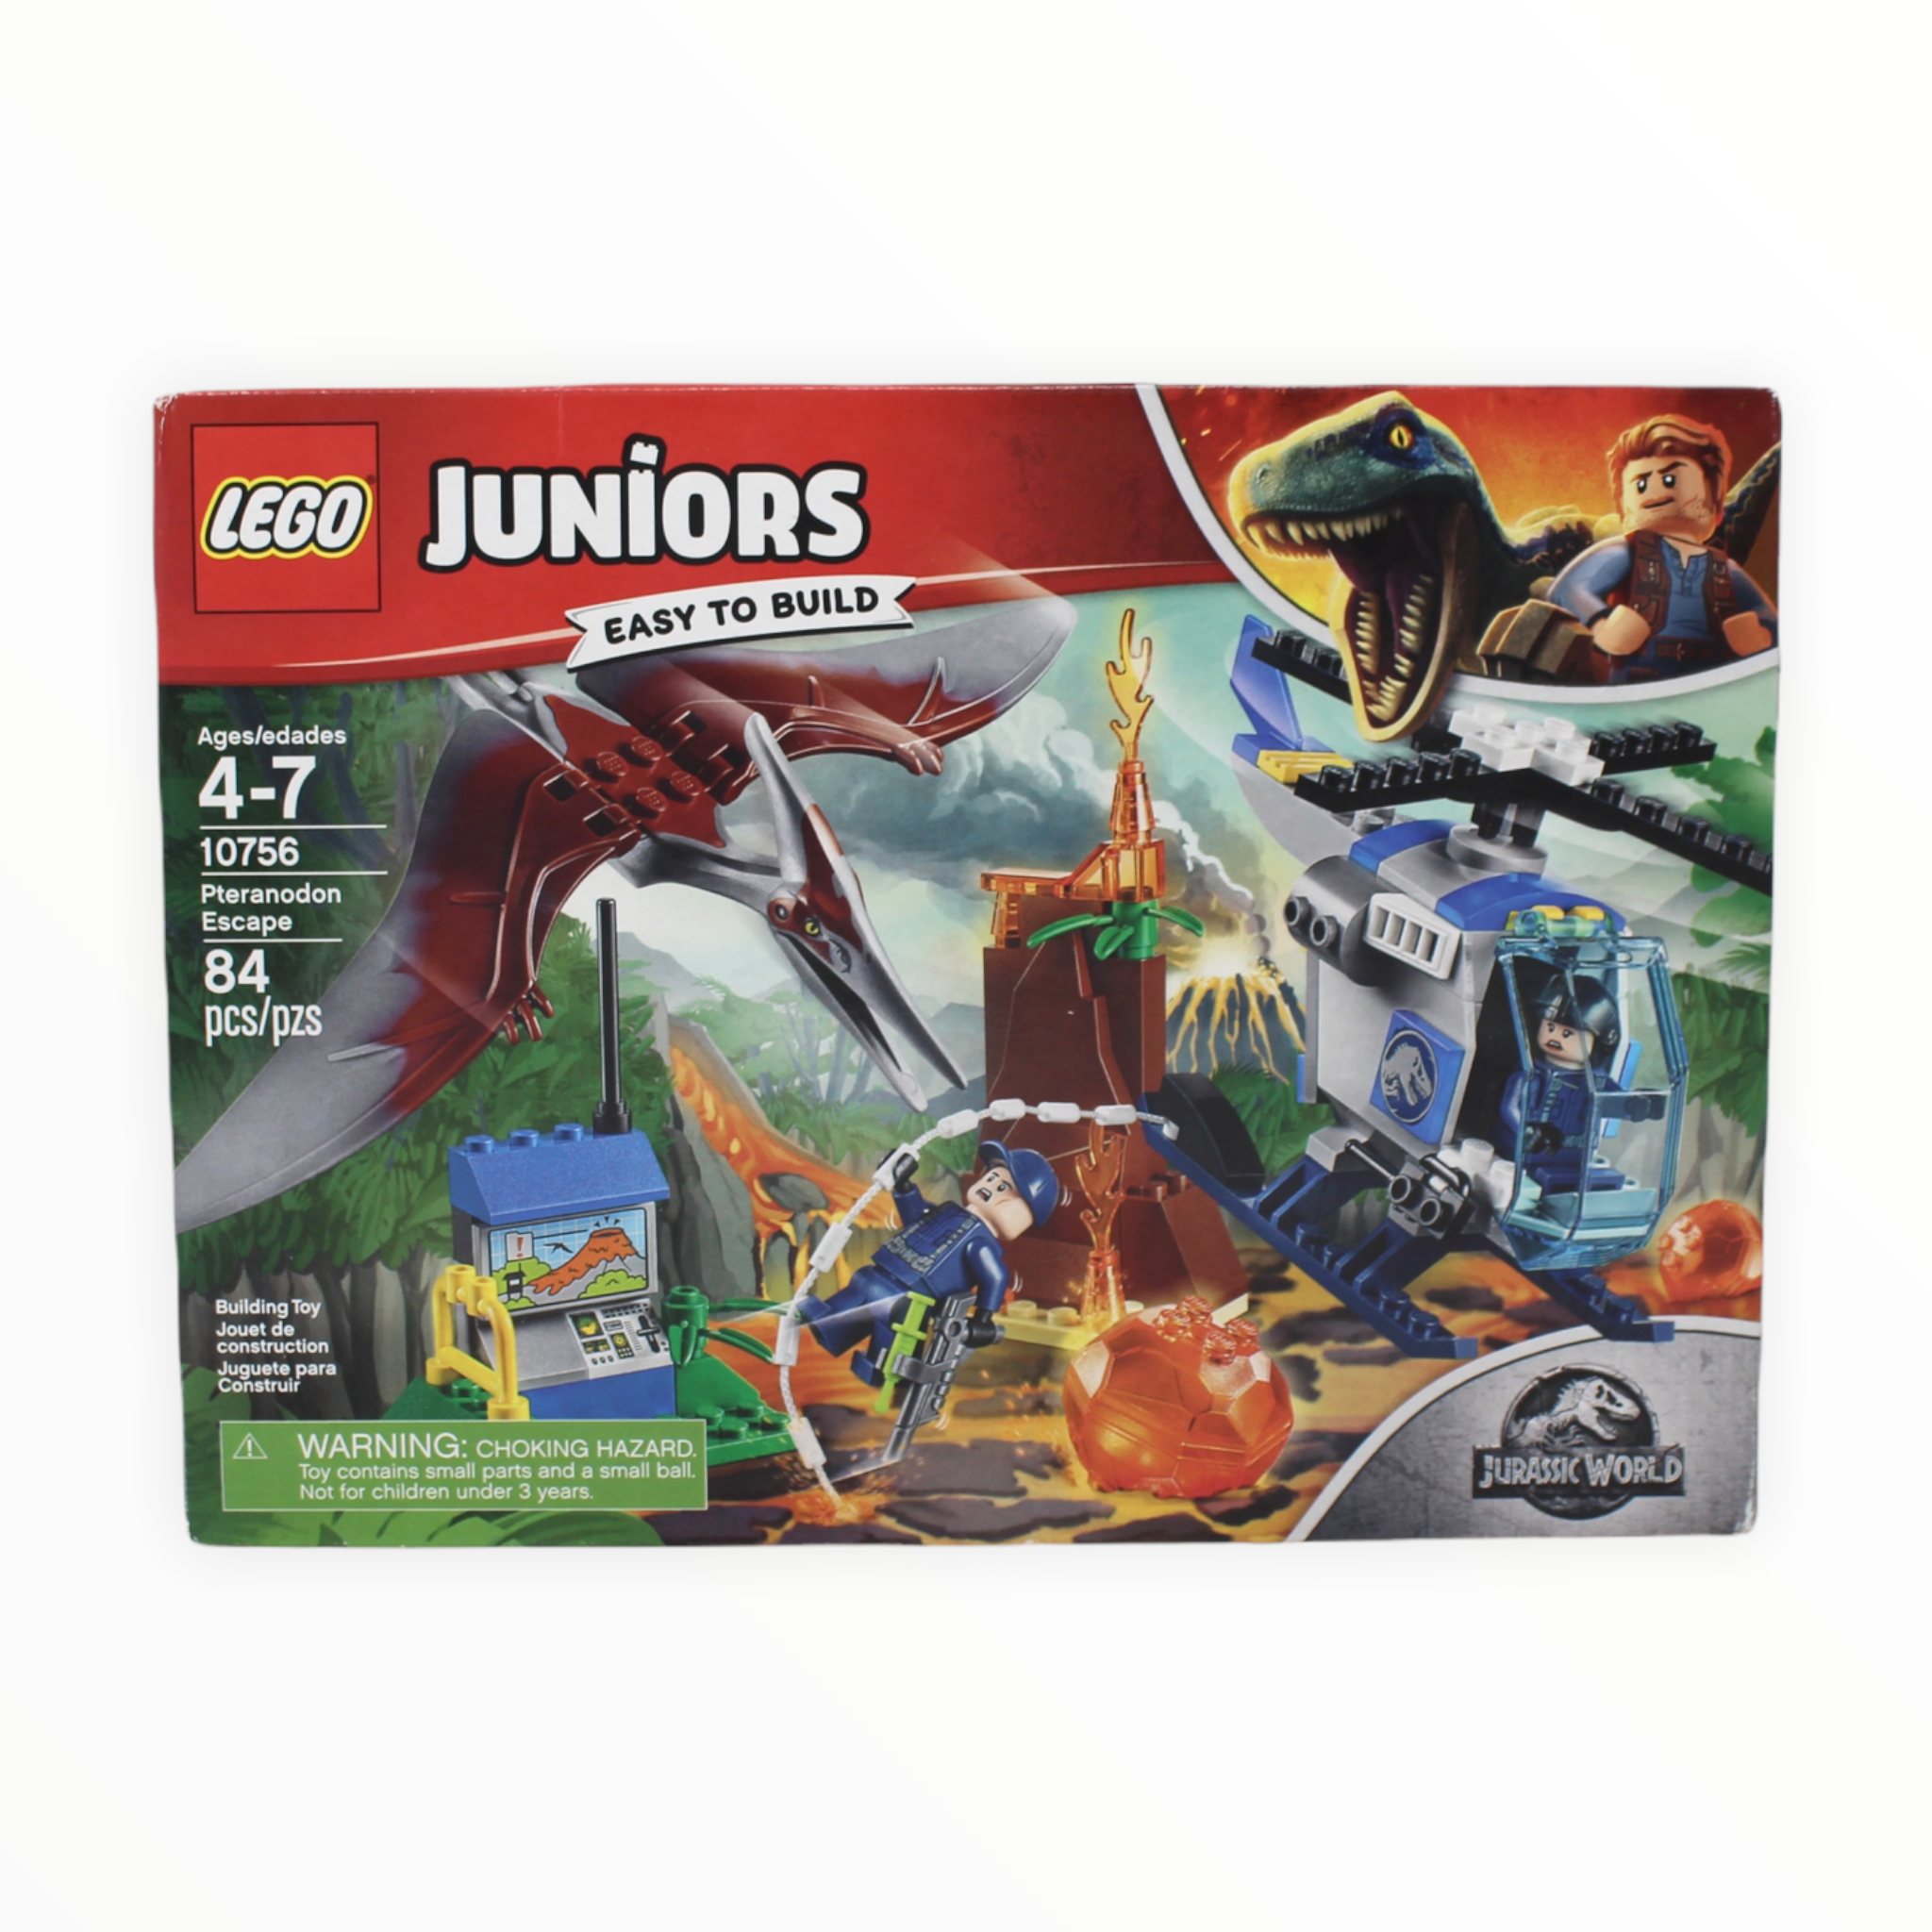 Retired Set 10756 Juniors Jurassic World Pteranodon Escape